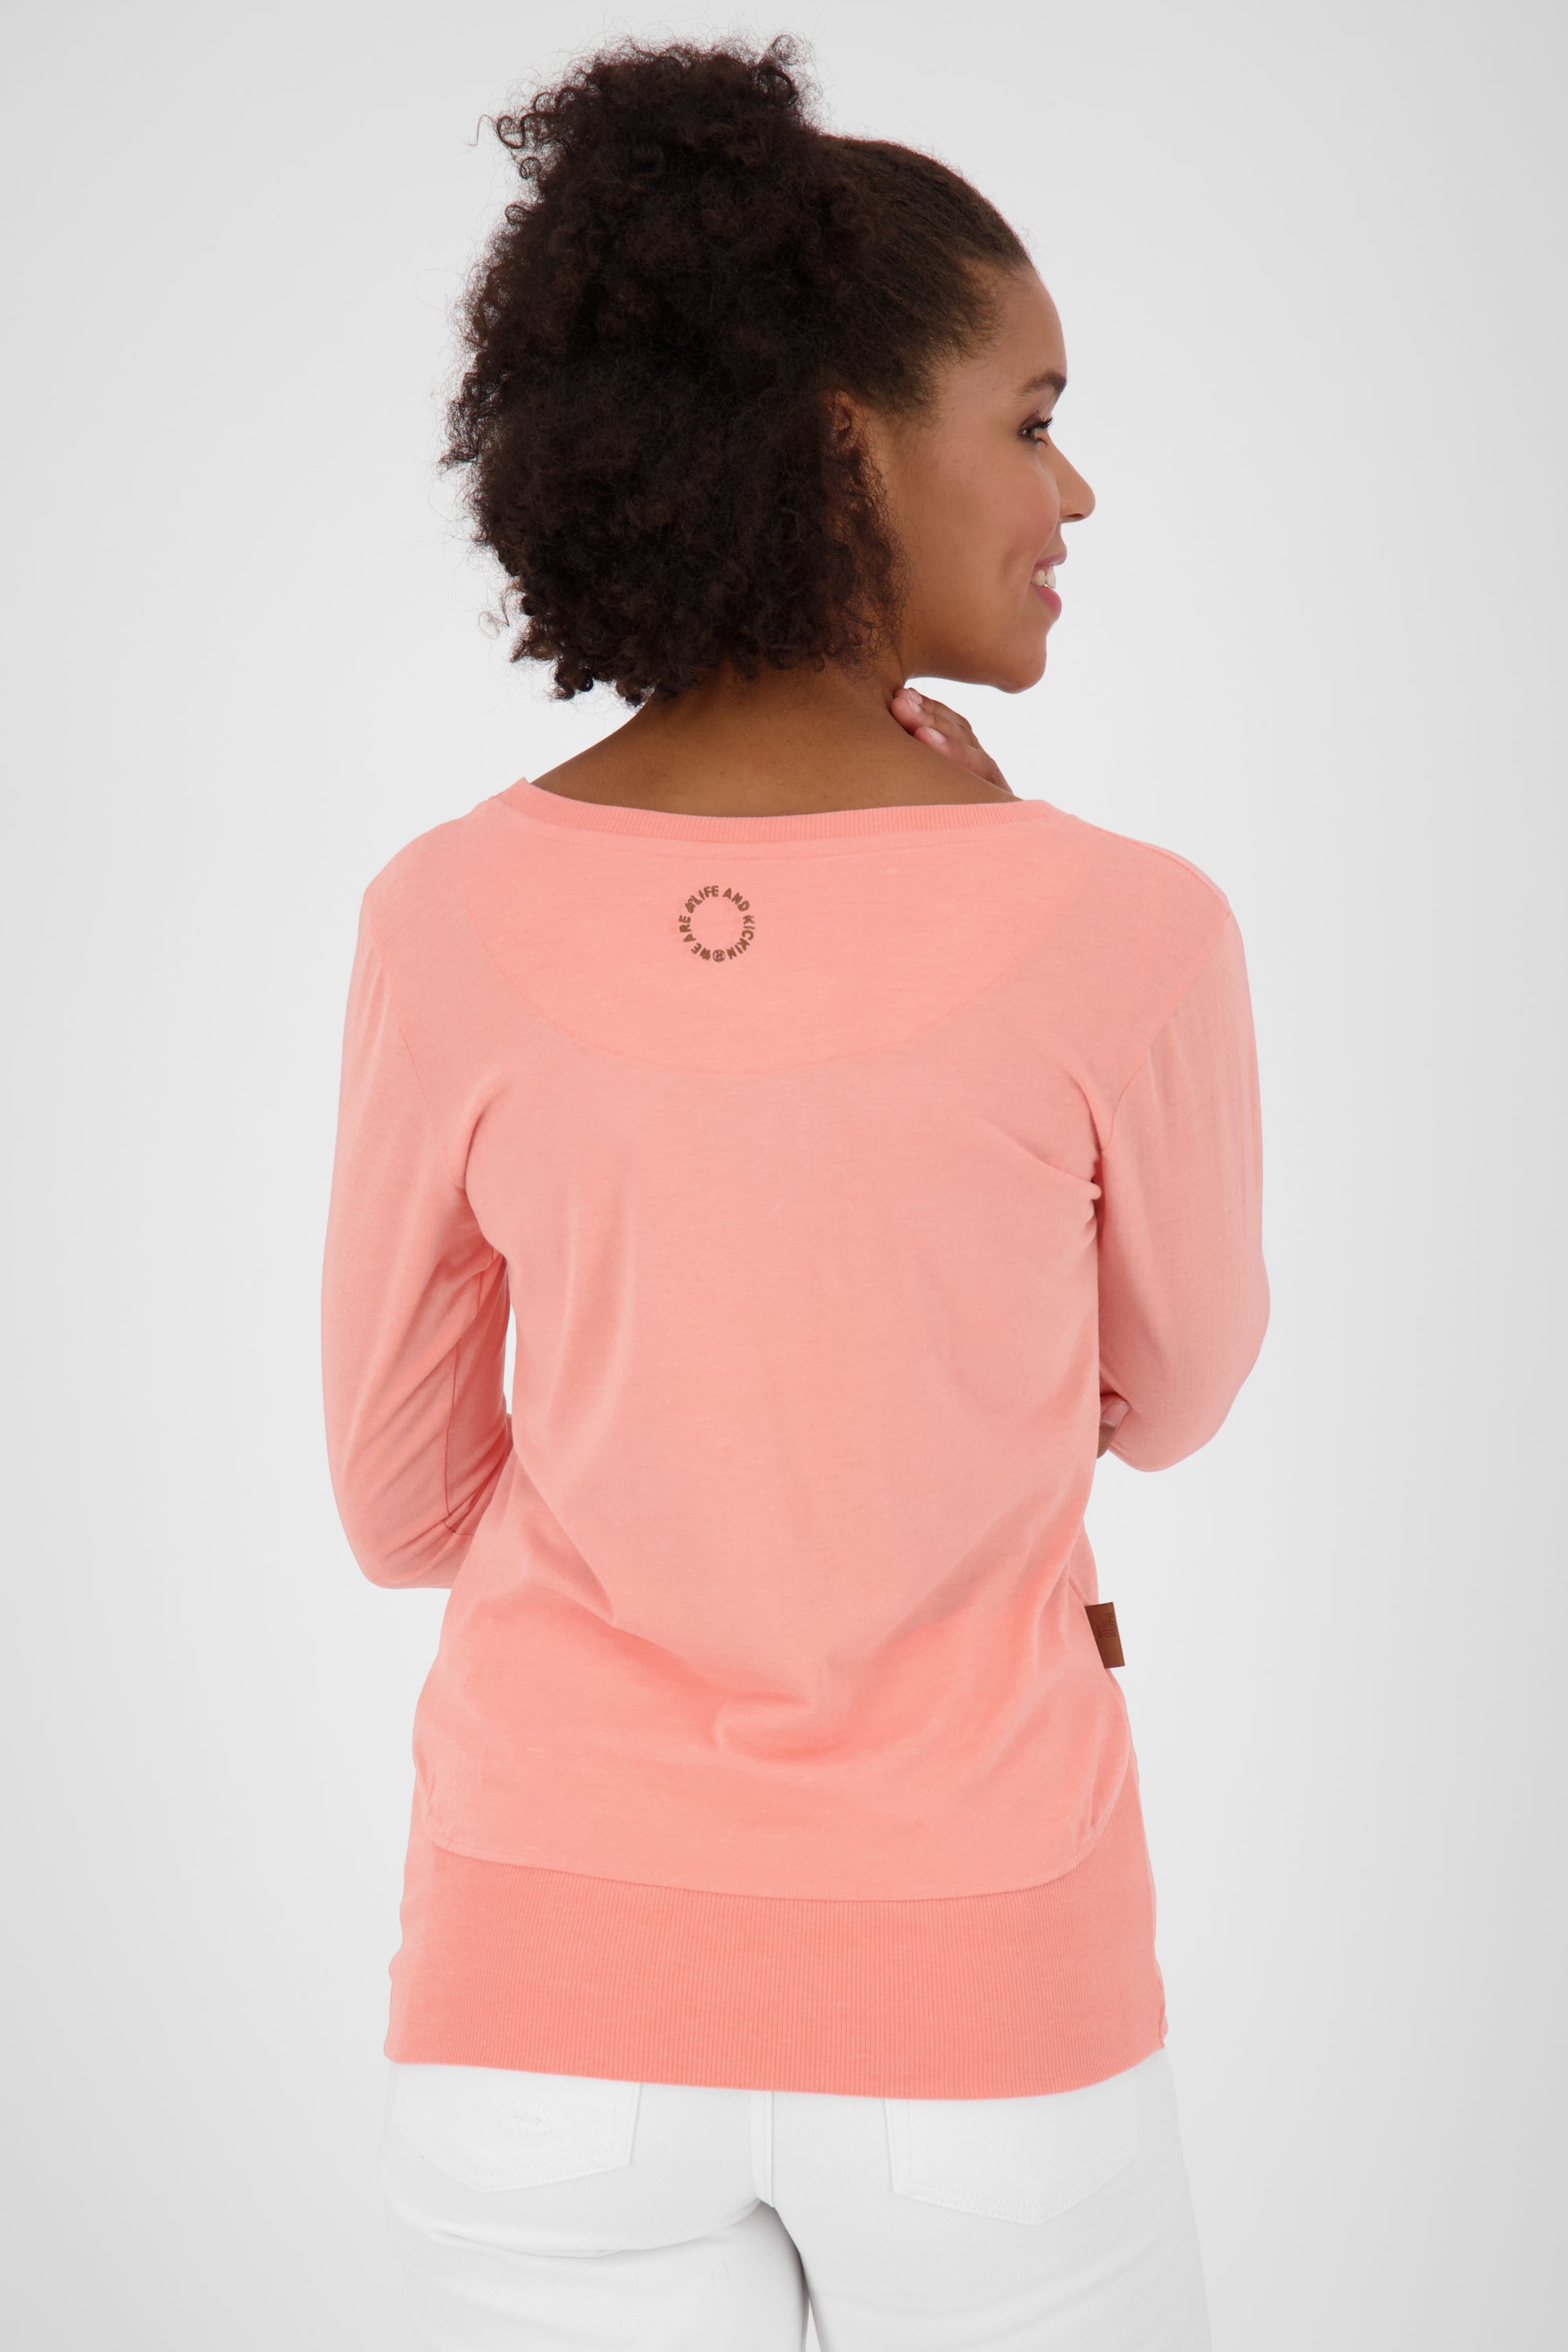 CocoAK A Long Langarmshirt für Damen - lässig und modern Orange